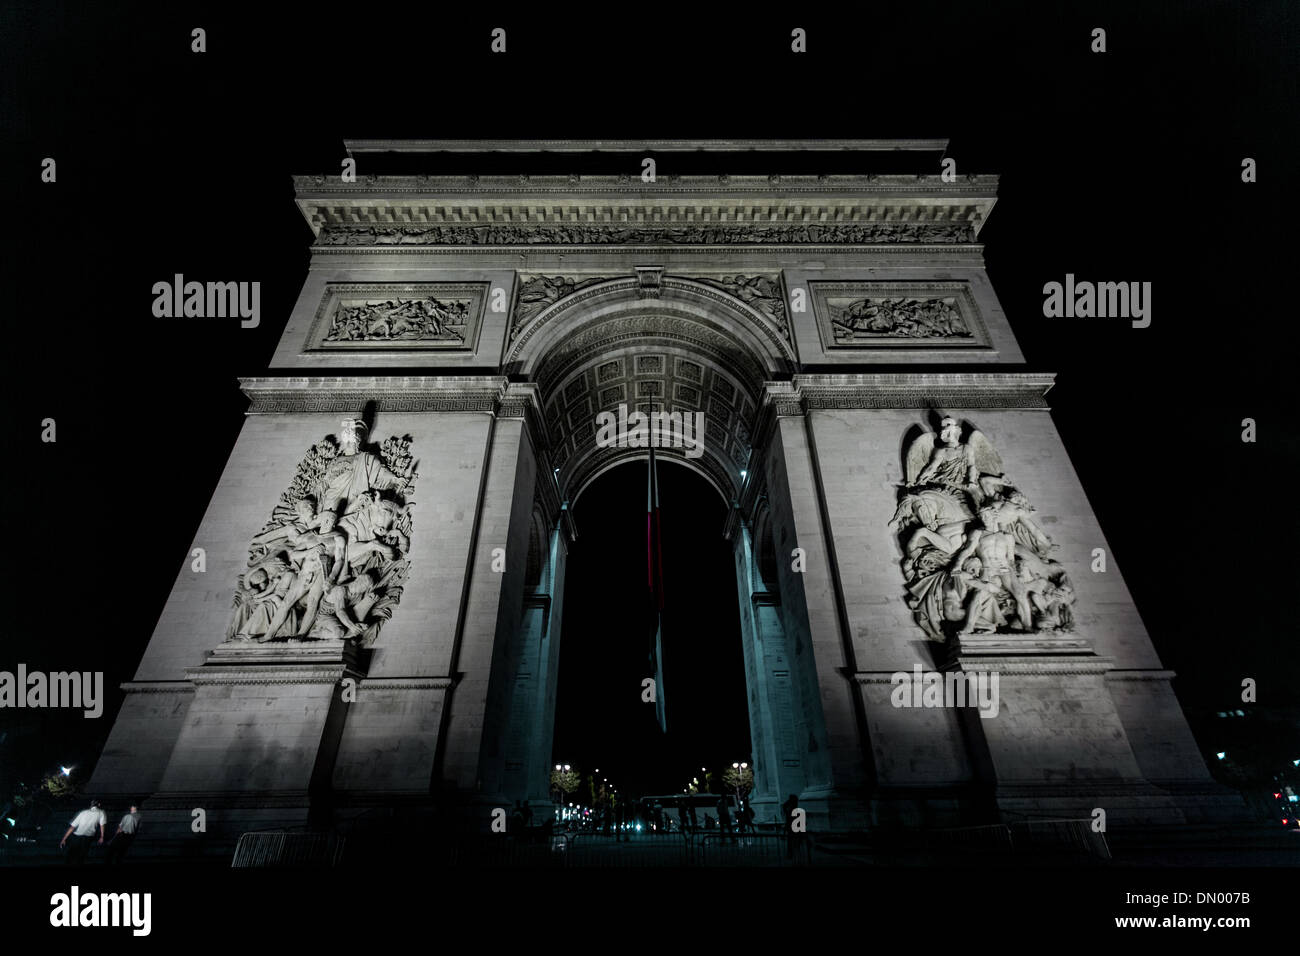 Der Arc de Triomphe ist eines der berühmtesten Sehenswürdigkeiten von Paris. Es steht in der Mitte des Place Charles de Gaulle. Stockfoto